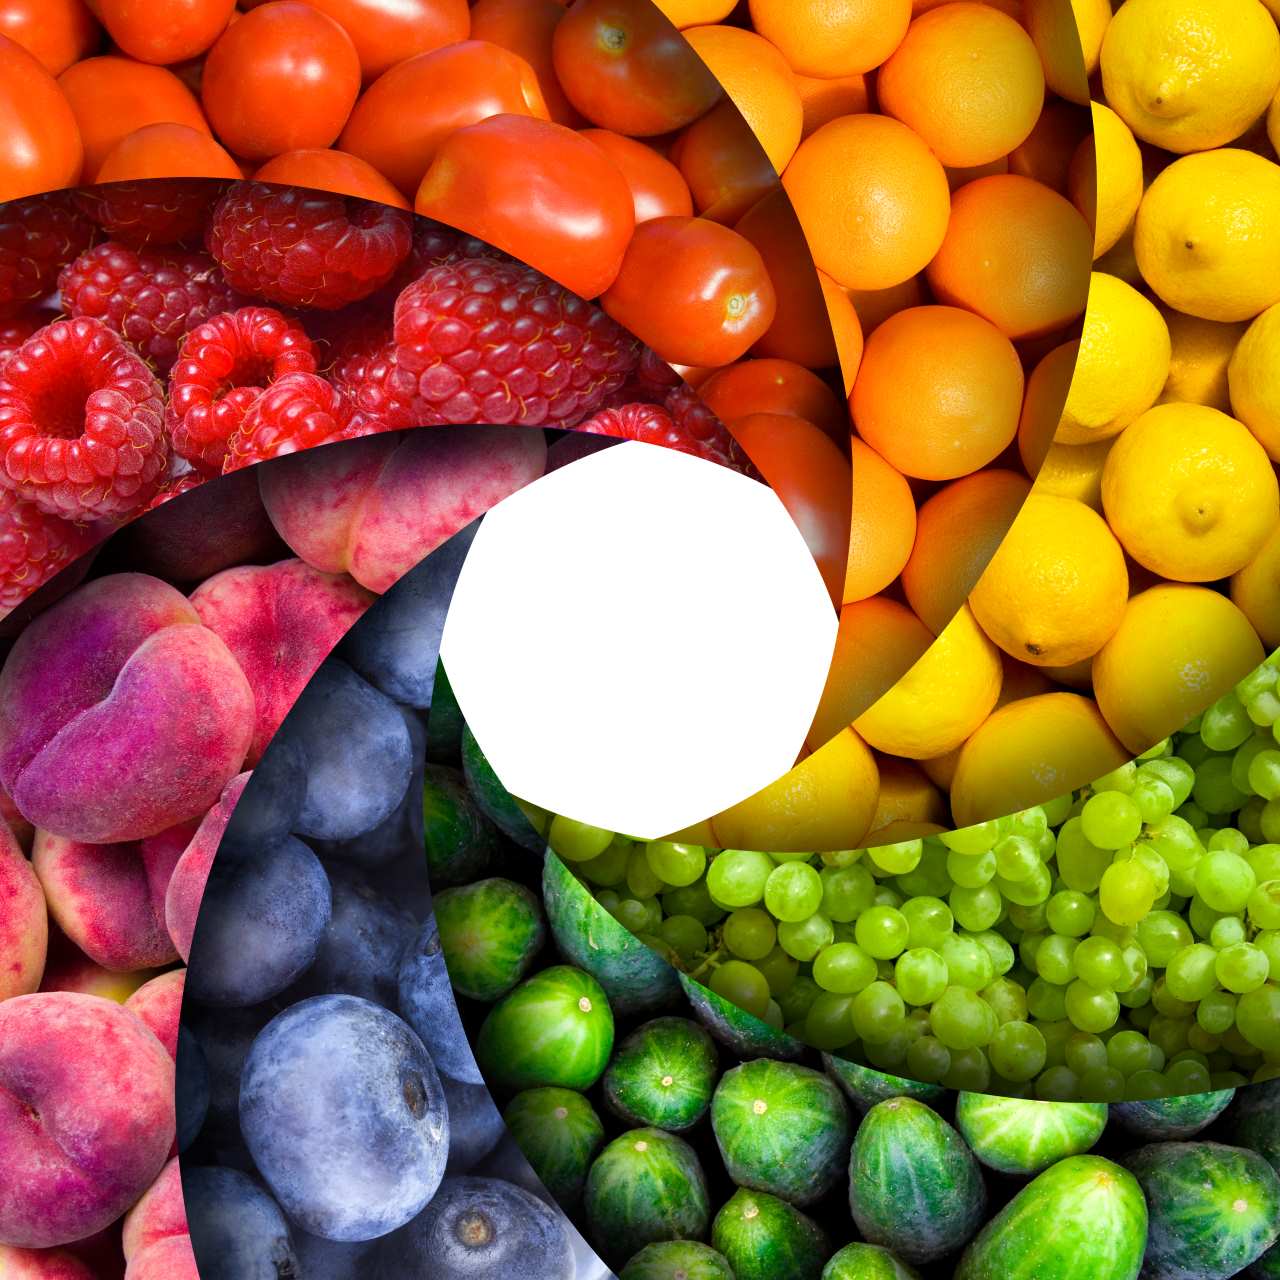 Lo nuevo en el blog: Colorantes alimentarios  Aditivos alimentarios, Colorante  alimentario, Alimentar